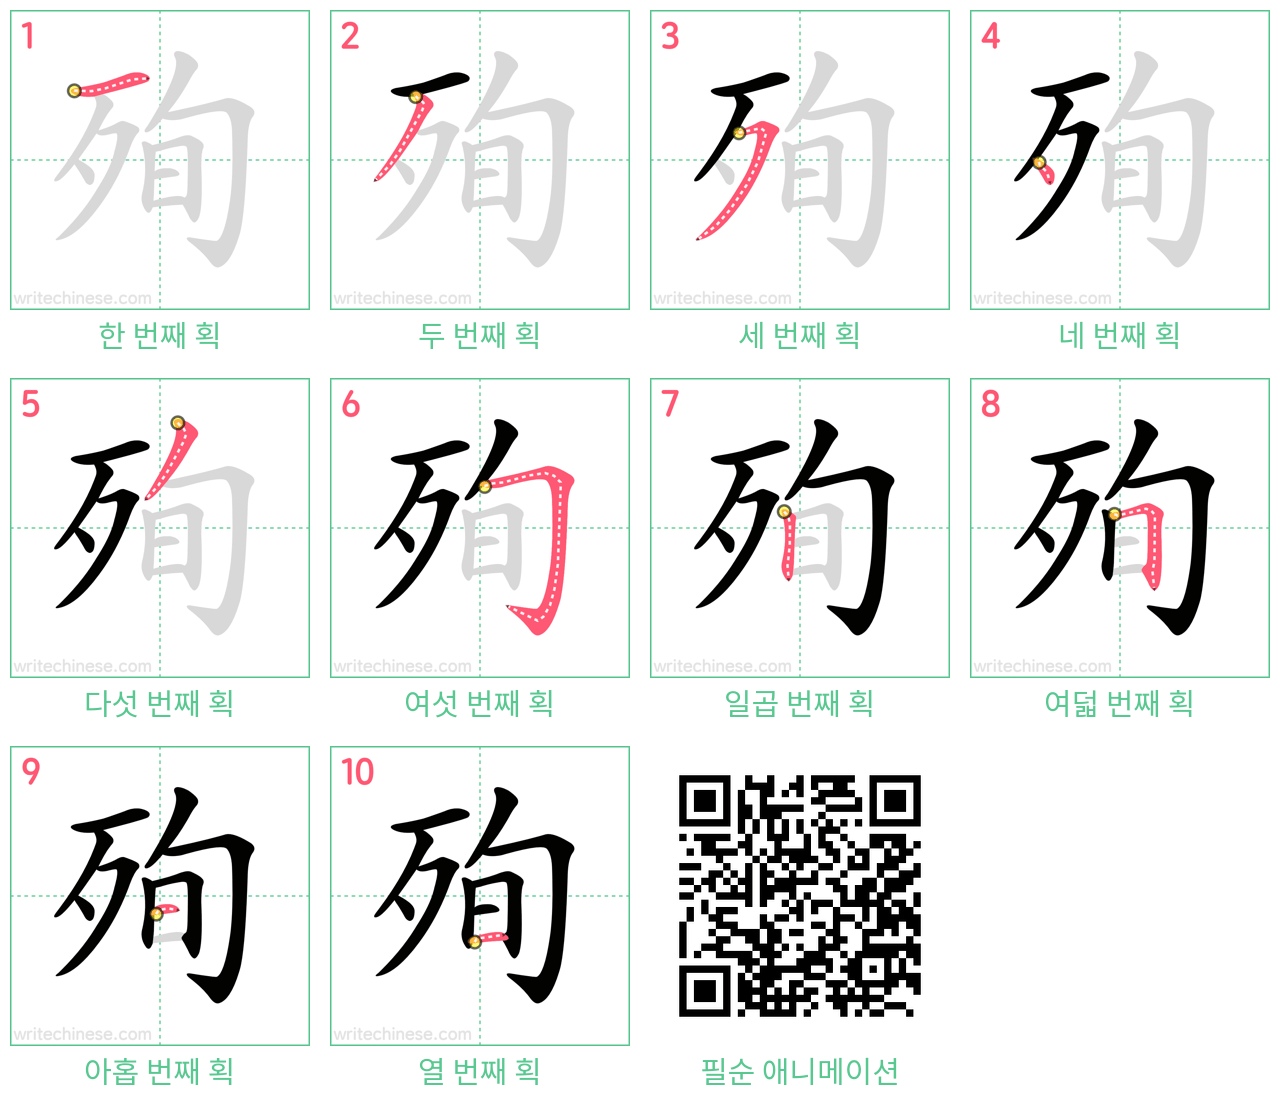 殉 step-by-step stroke order diagrams